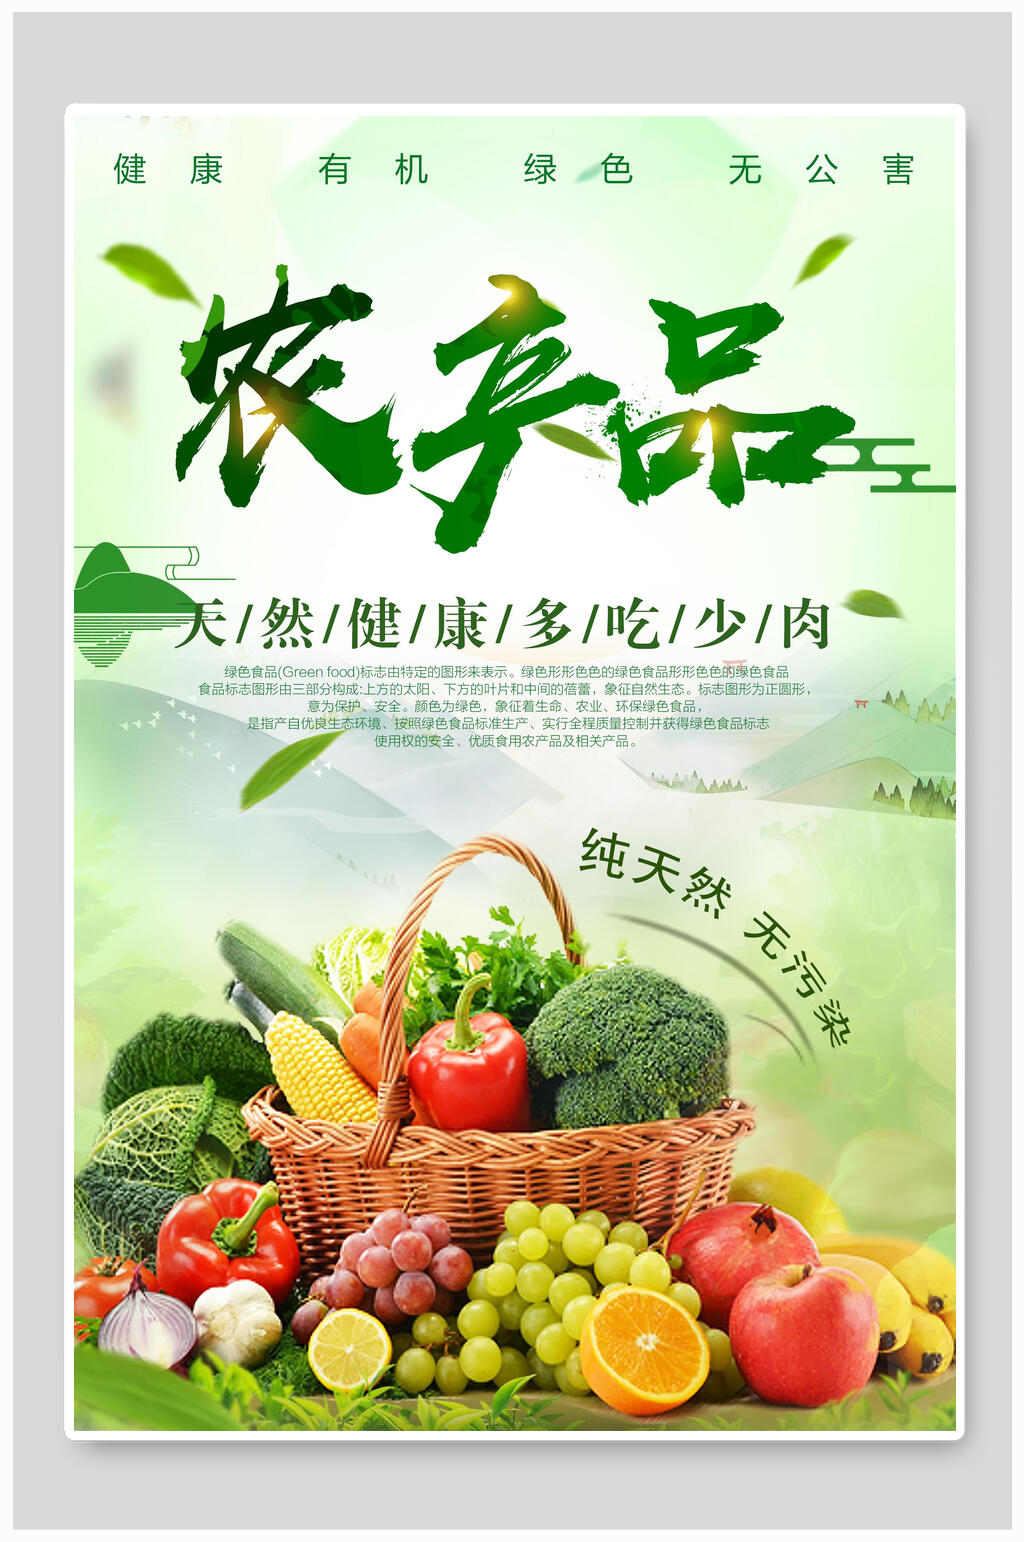 健康自然绿色有机农产品海报设计模板下载